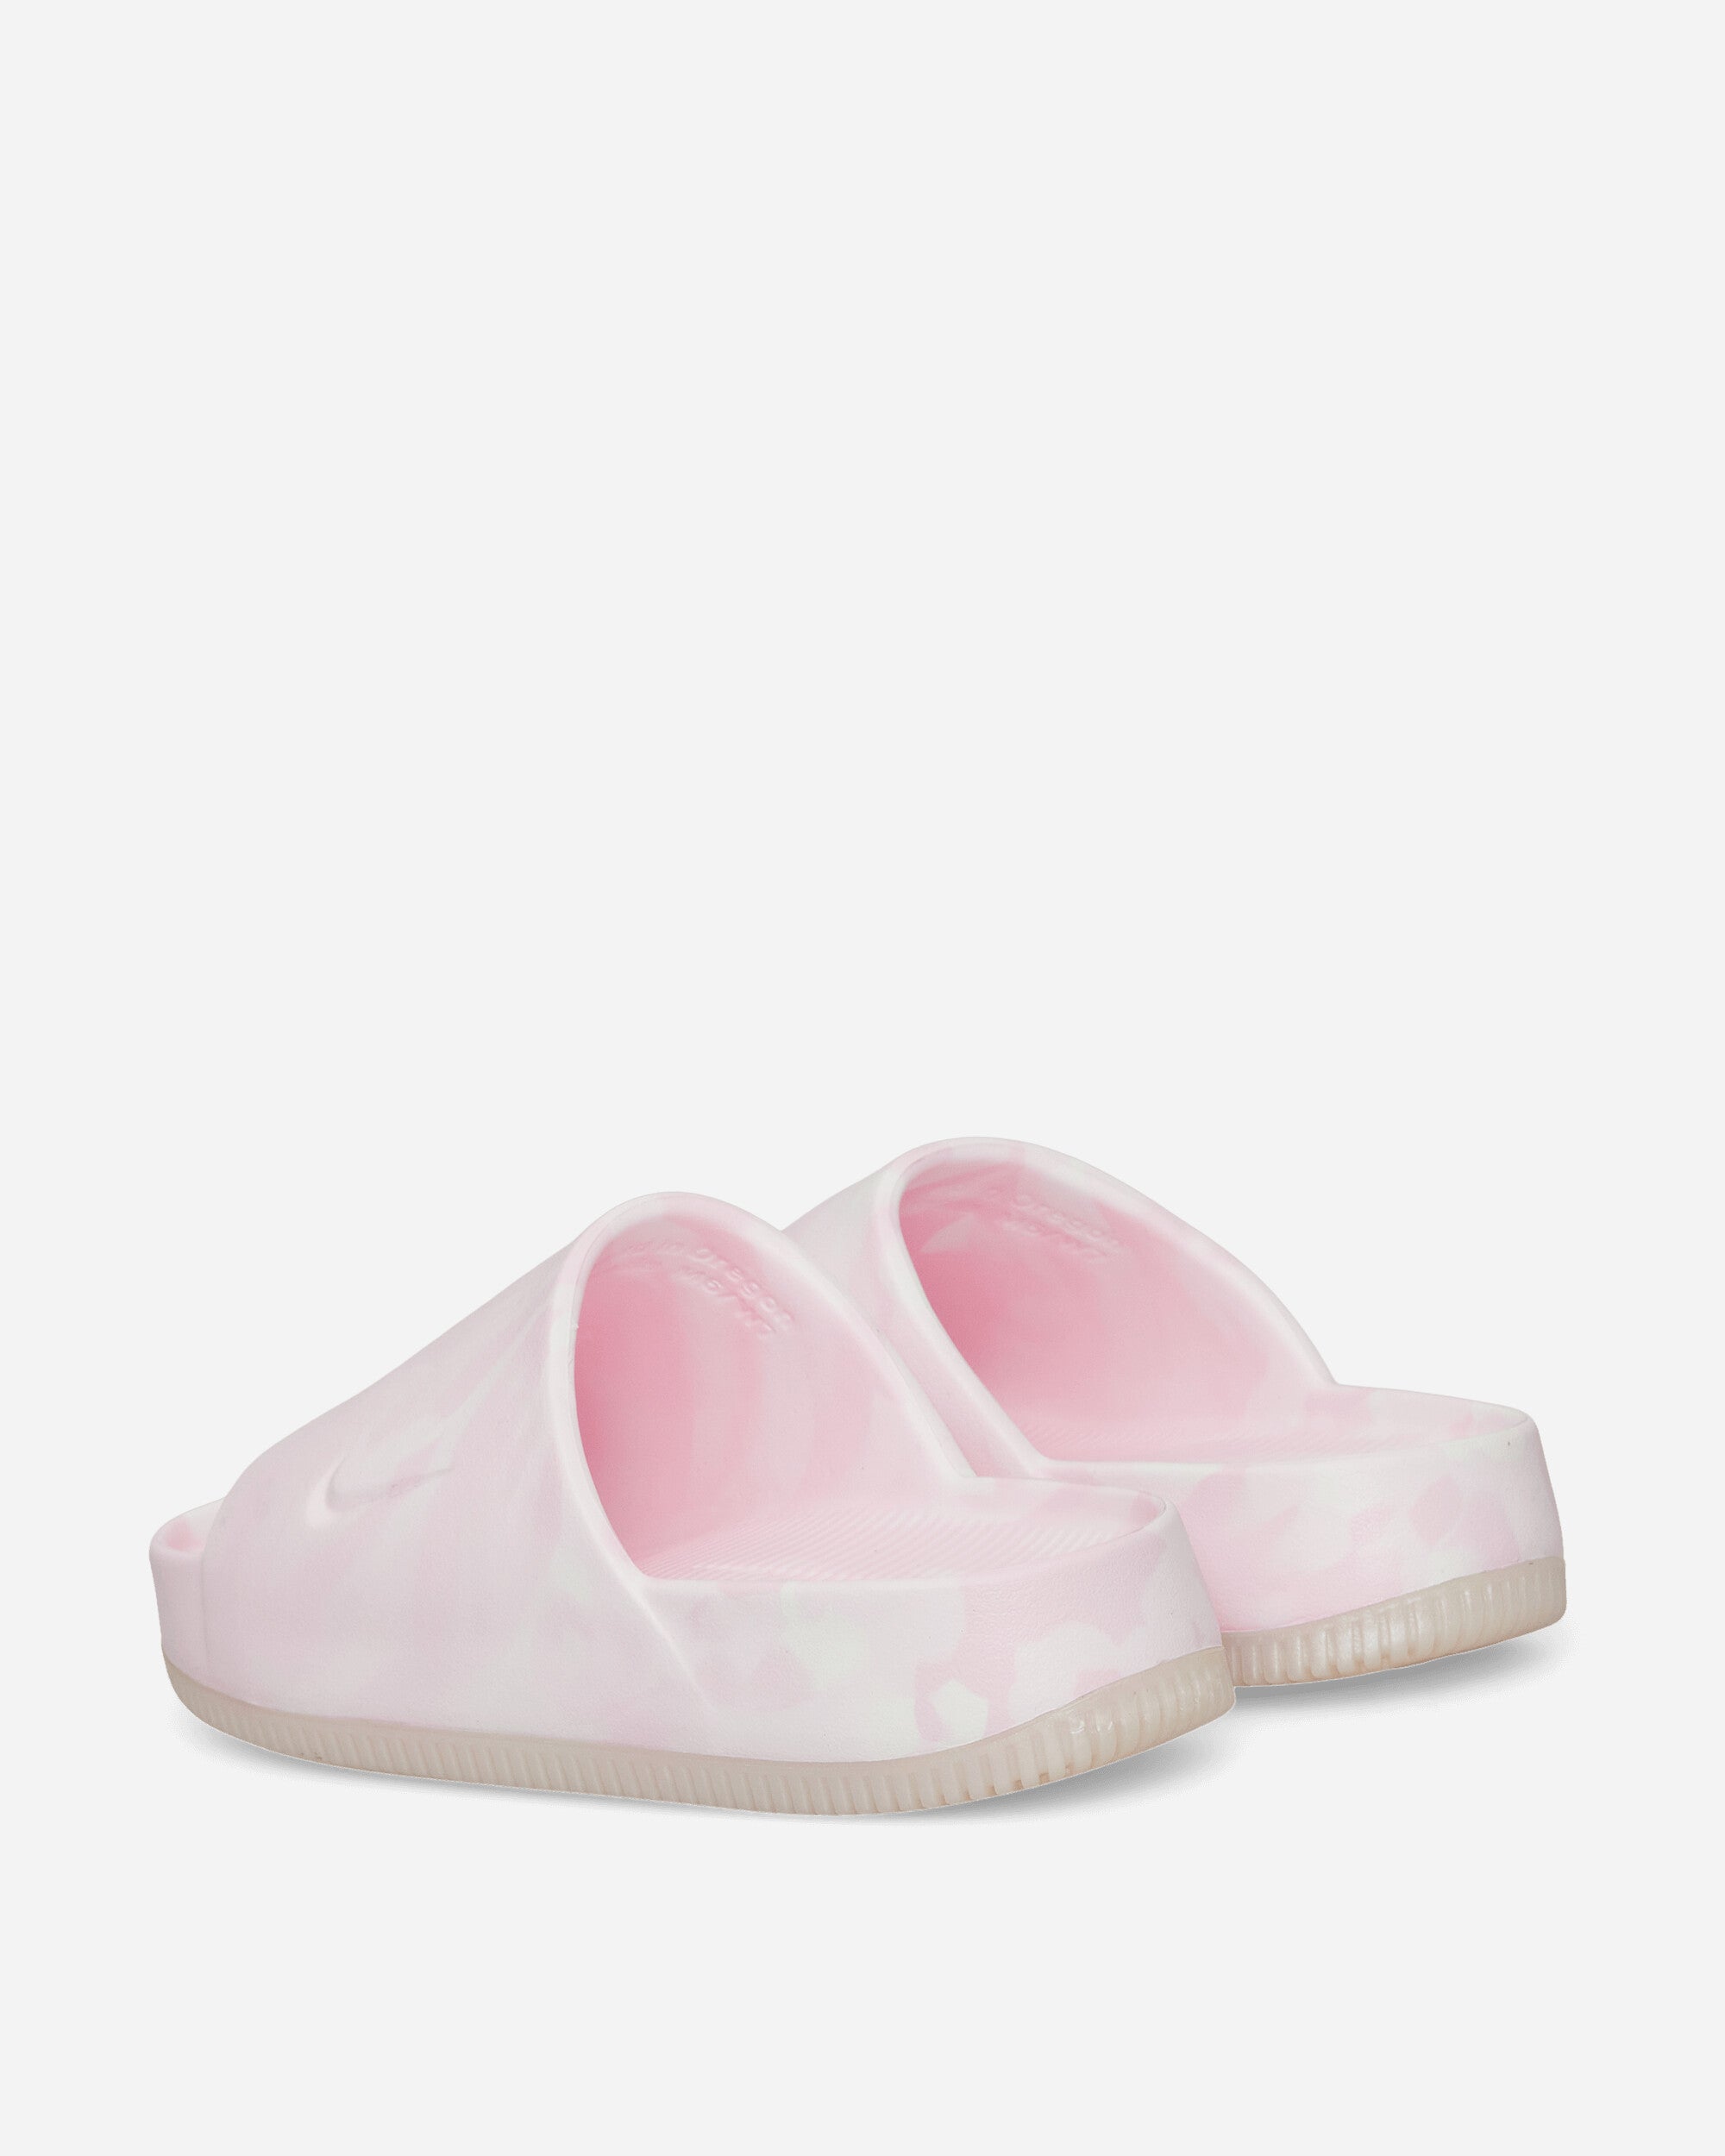 Nike Wmns Nike Calm Slide Se Pink Foam /Pink Foam  Sneakers Low FV5643-600